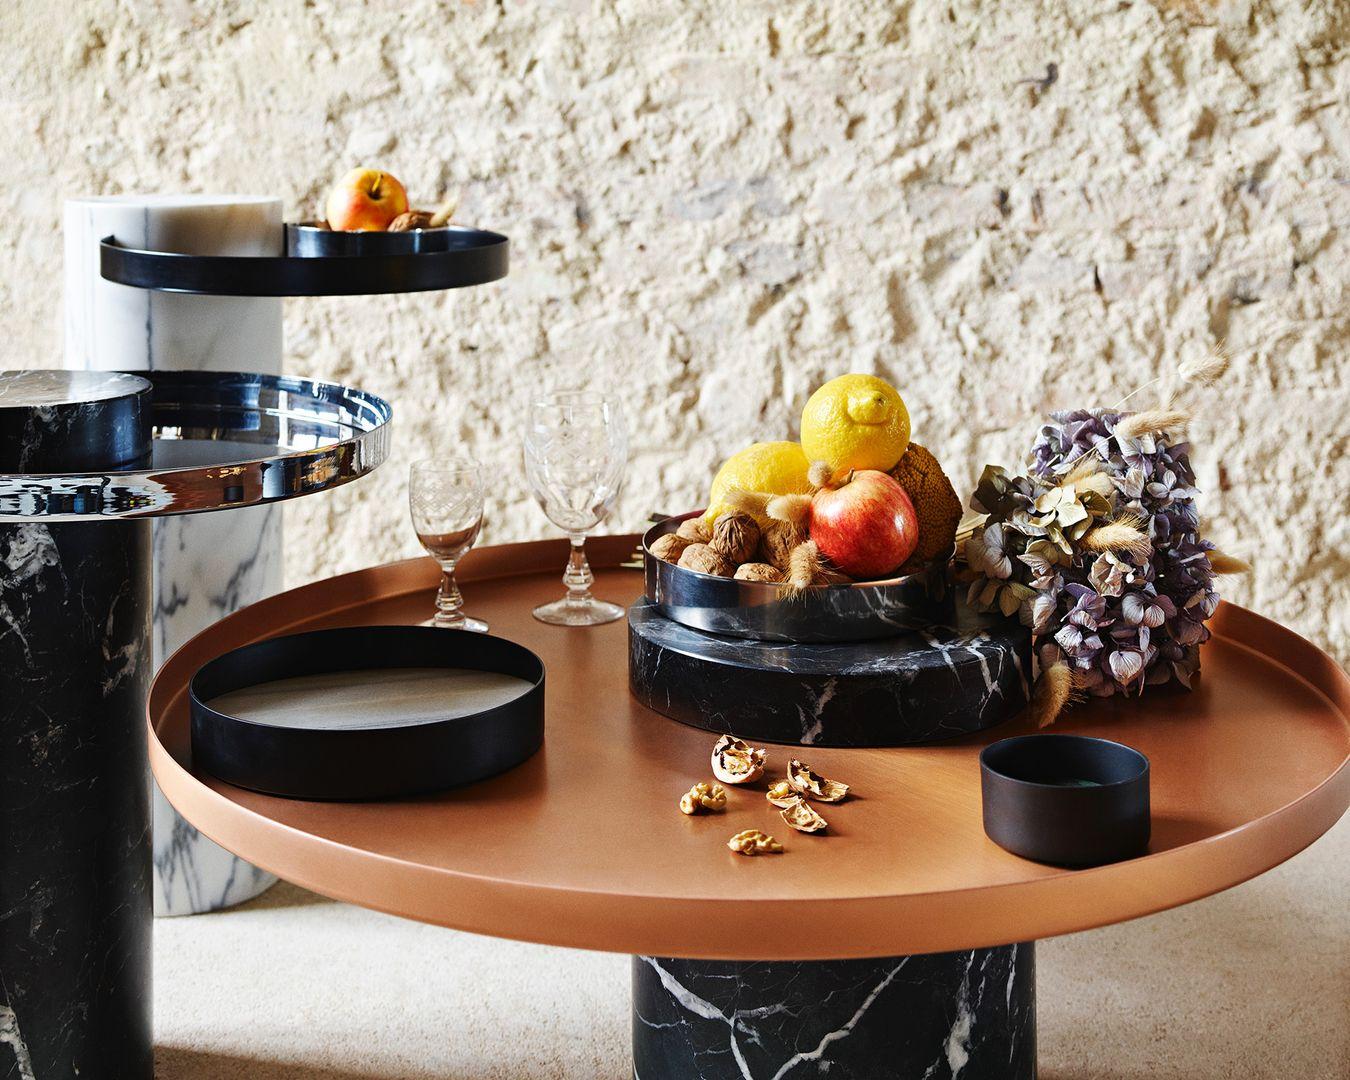 Salute ist eine Tischfamilie, bei der Marmor und Metall kombiniert werden, um eine hohe visuelle Wirkung zu erzielen. Als Beistelltisch ist Salute mit seinen klaren Linien und seiner starken Persönlichkeit der perfekte Begleiter für Ihren kultigen